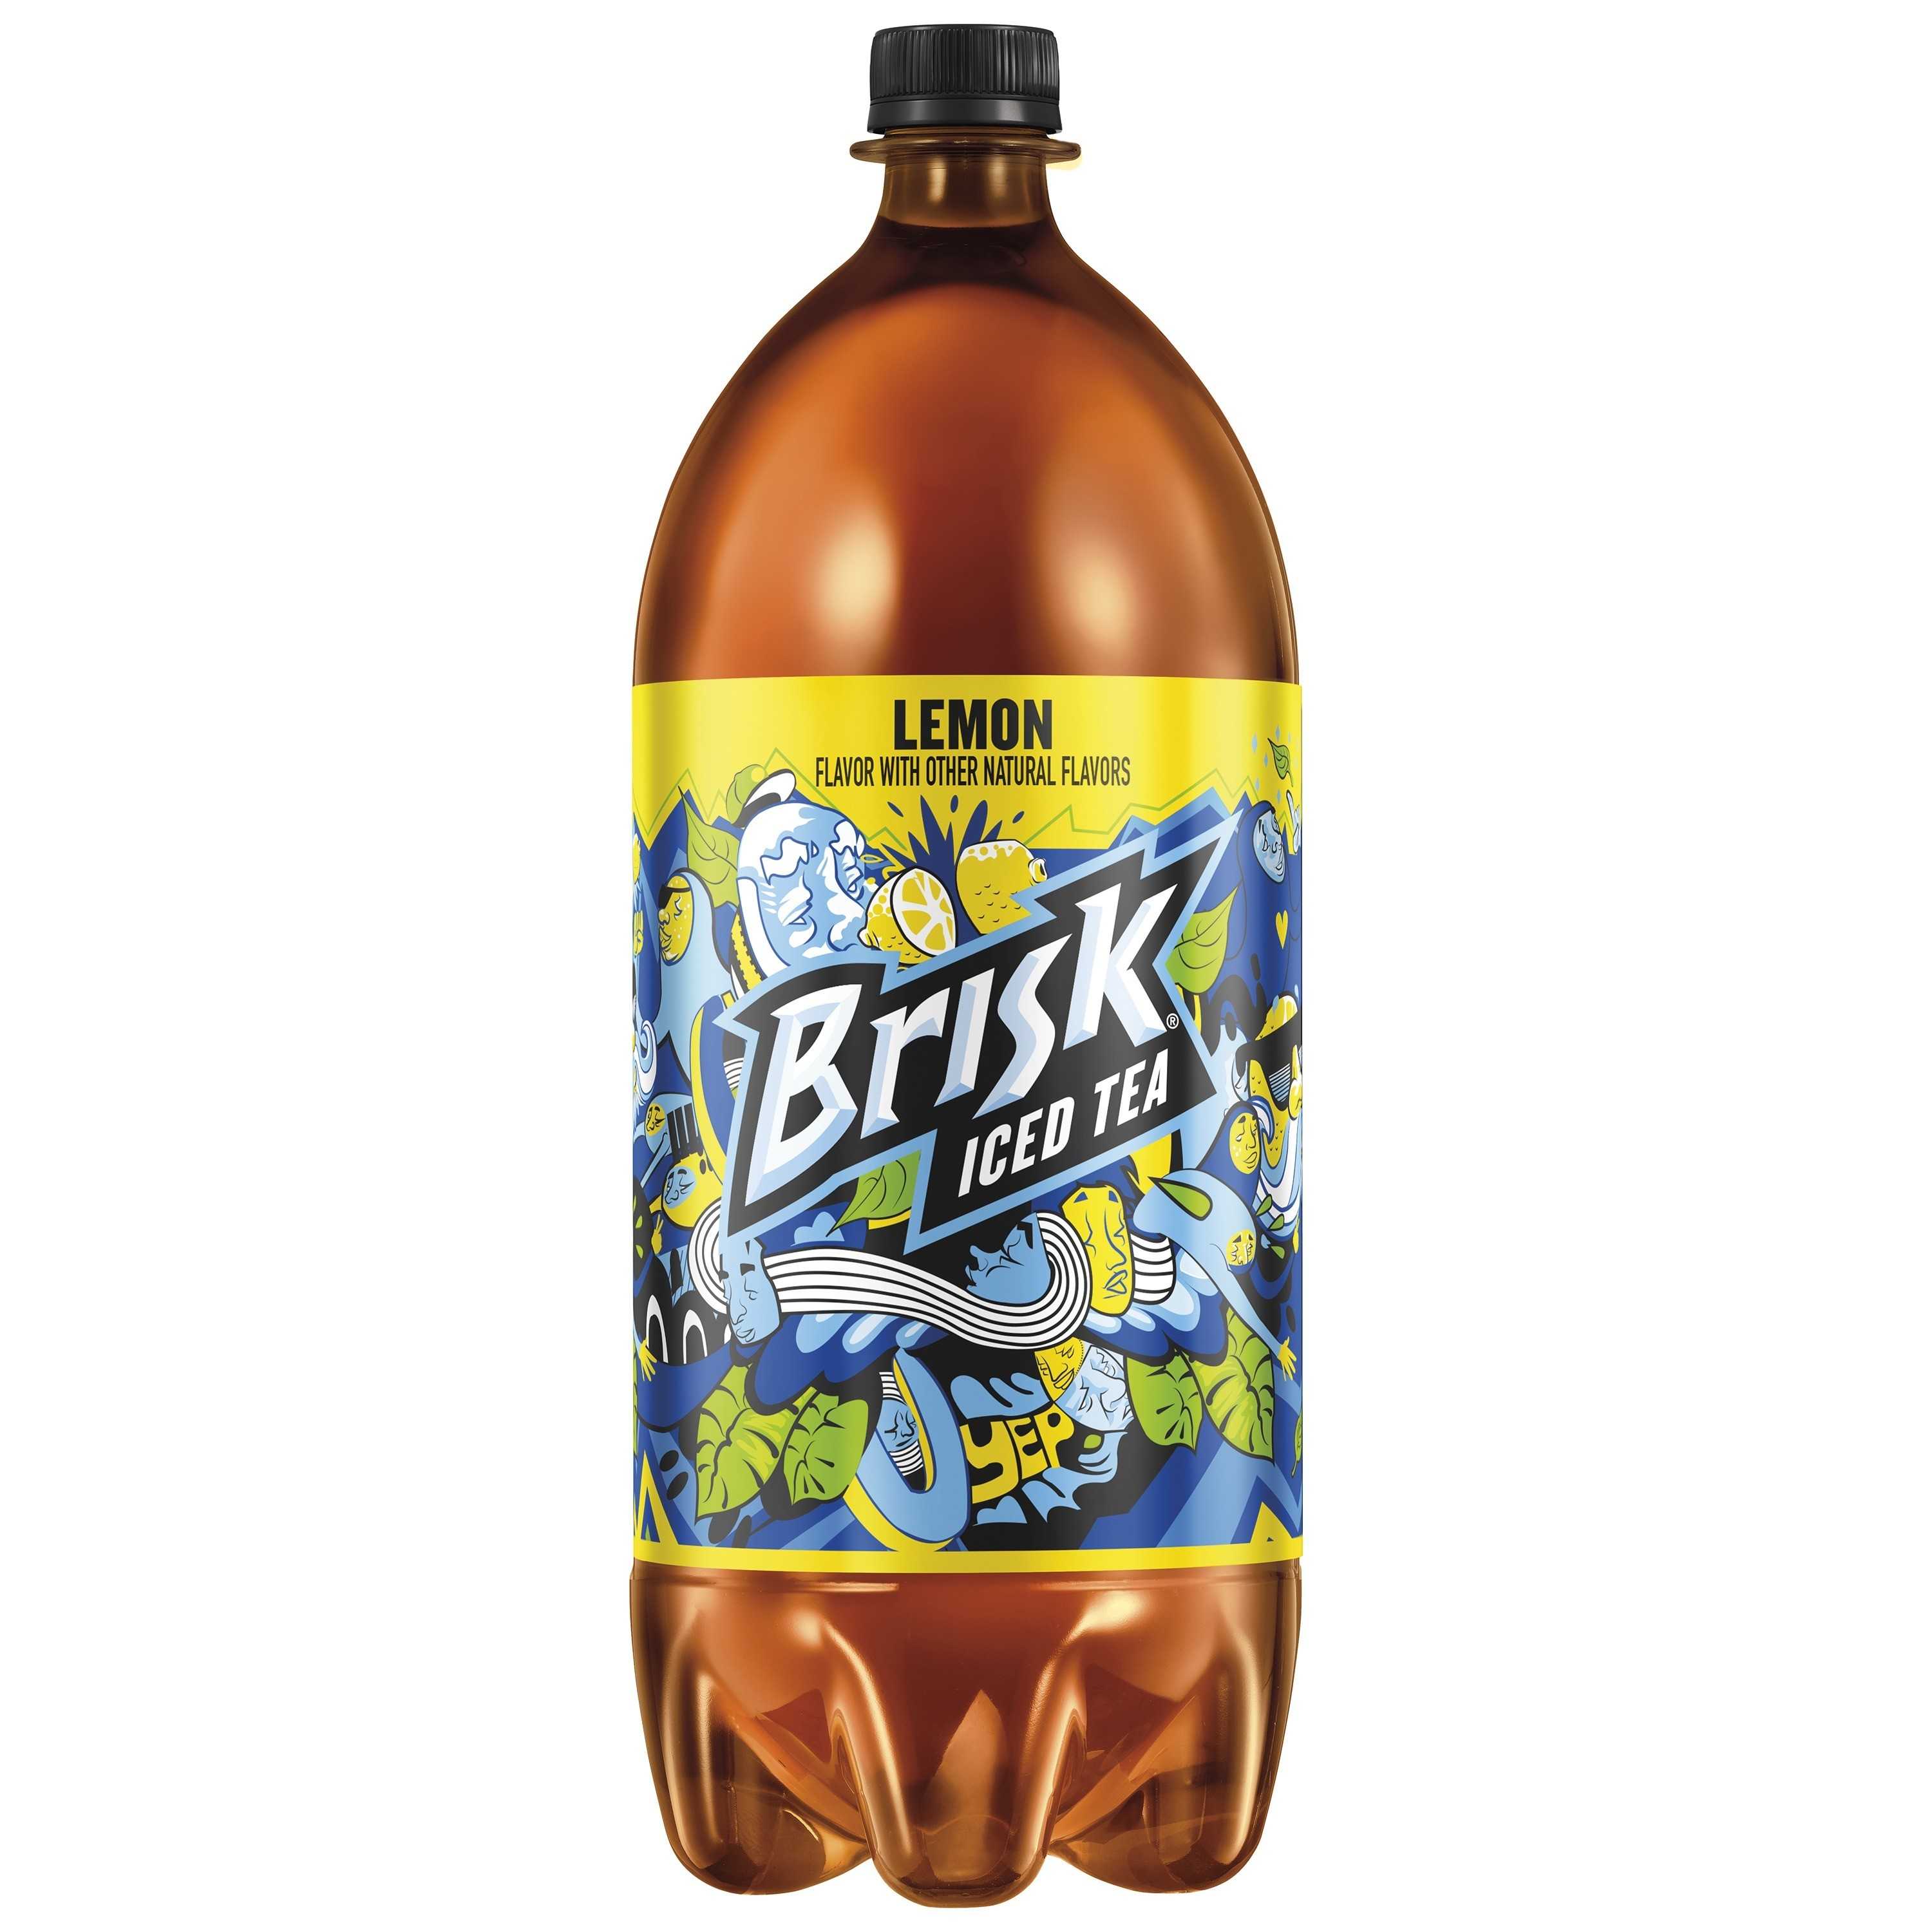 Brisk Iced Tea, Lemon, 2 Liter Bottle